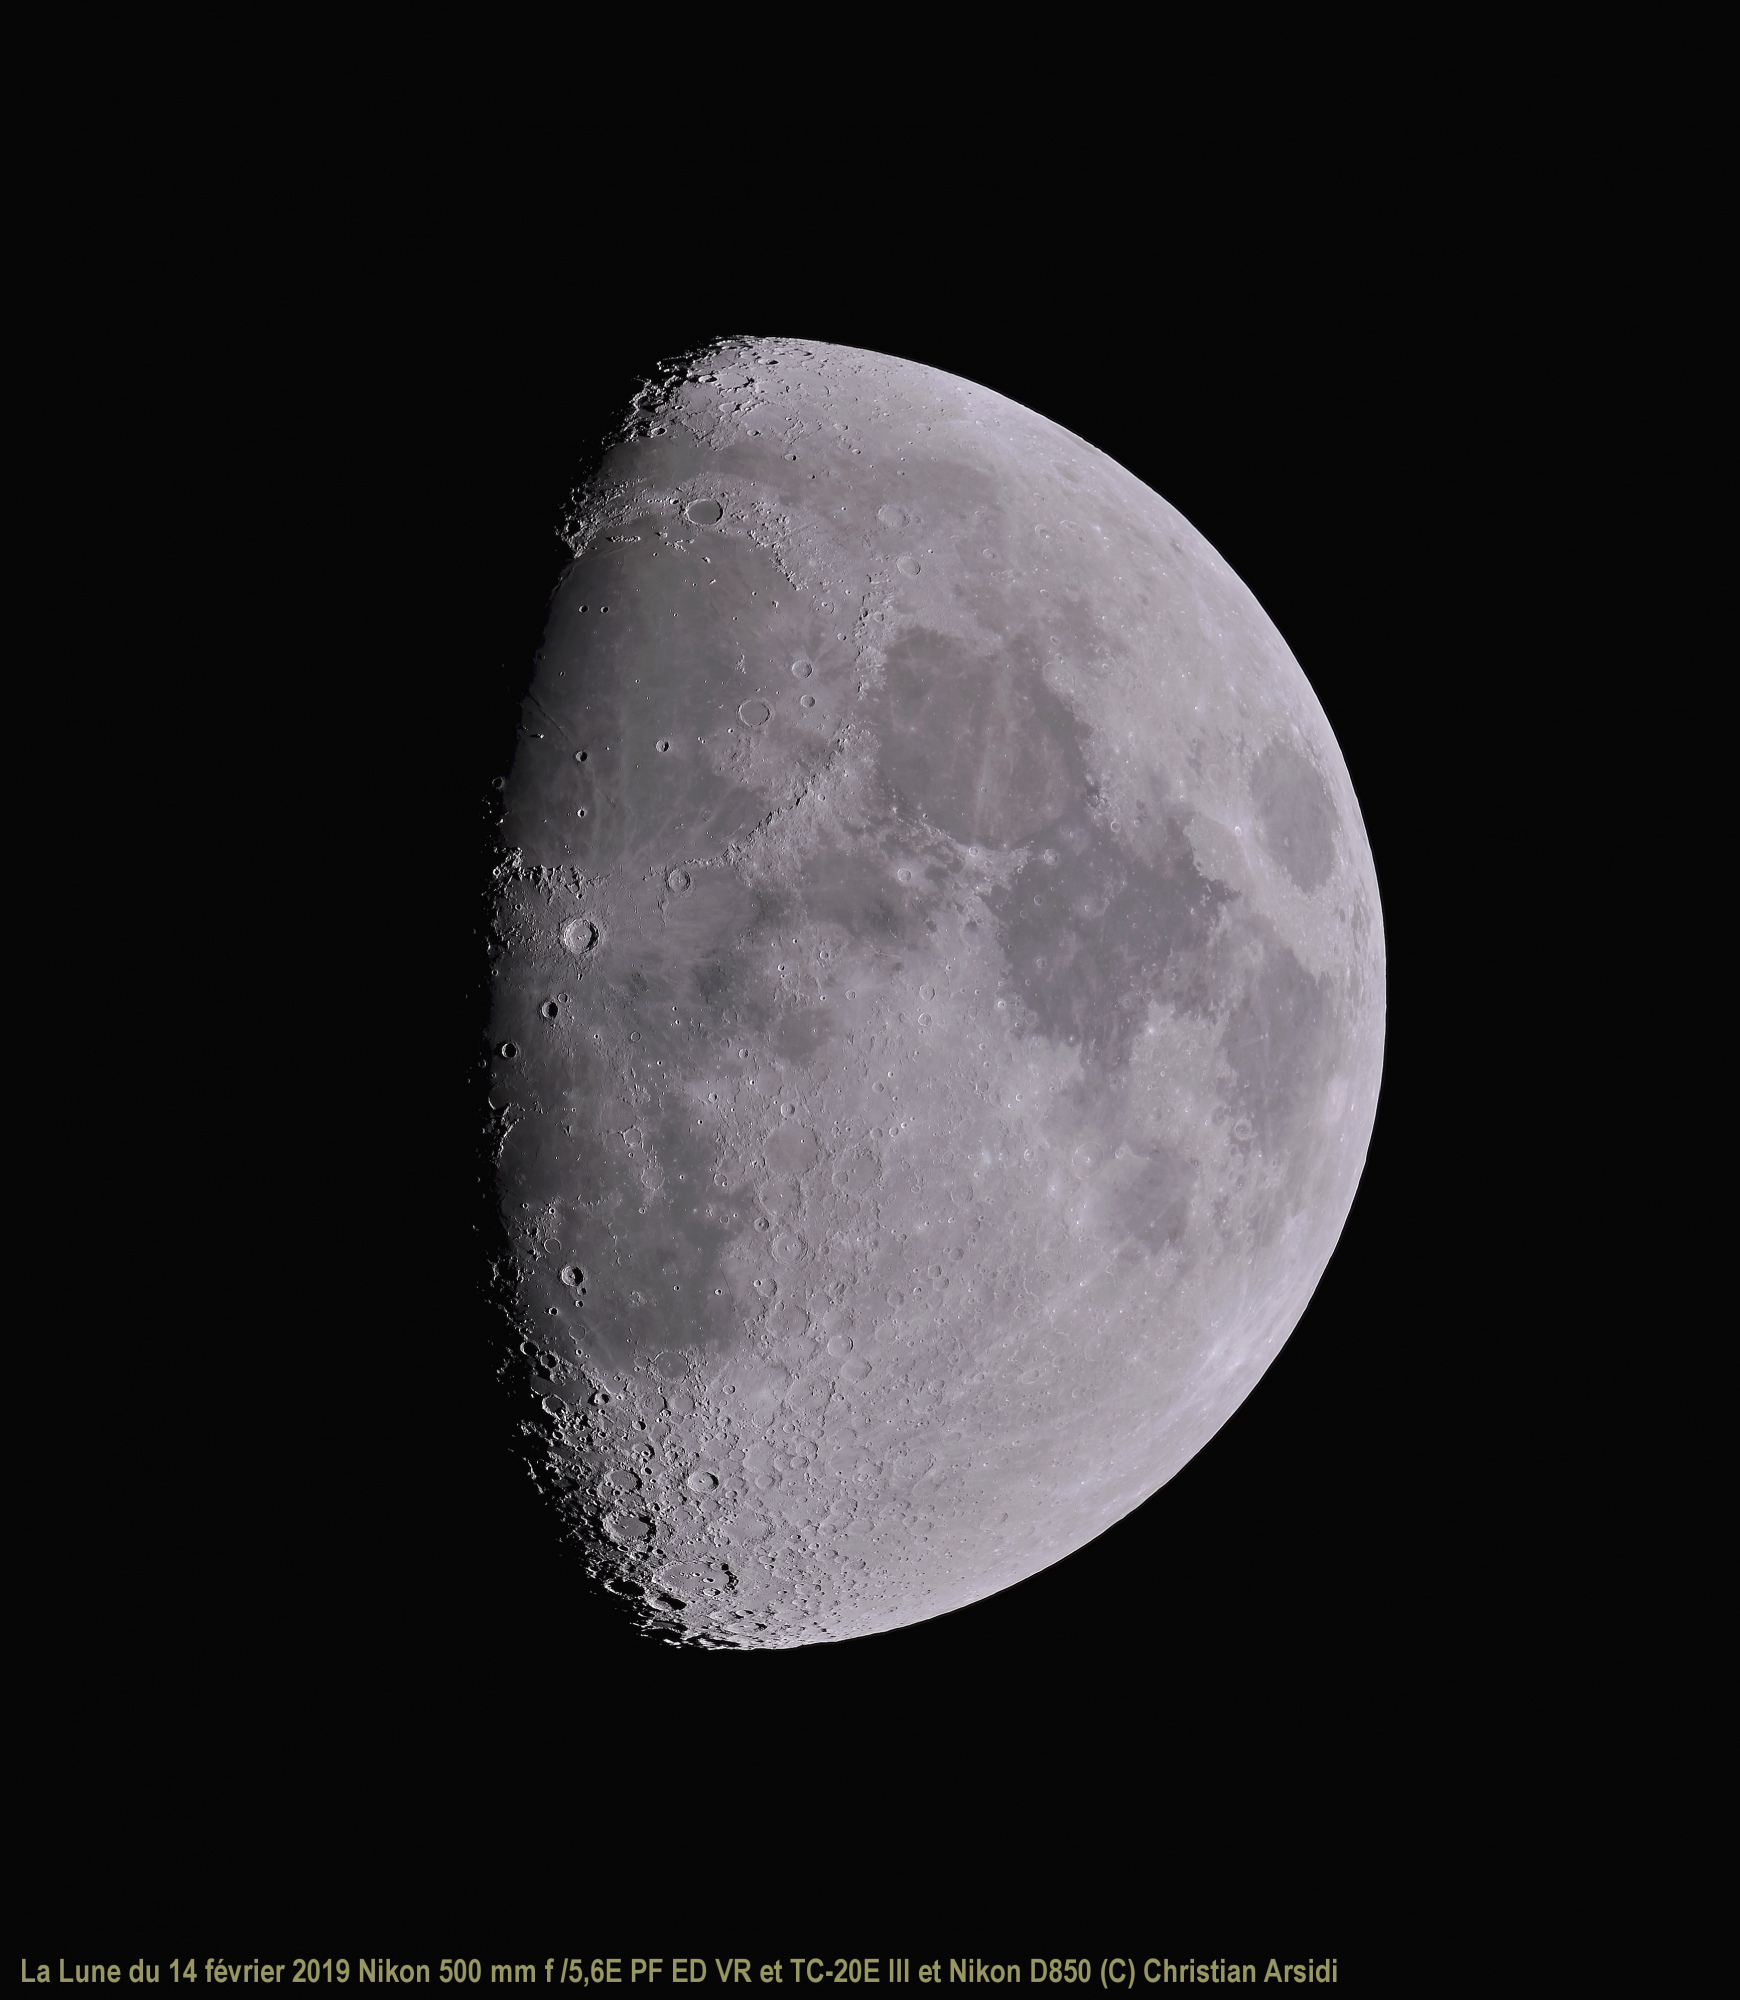 La Lune 40 images Vancittert et MF V 4 TTB recadrée BV JPEG.jpg